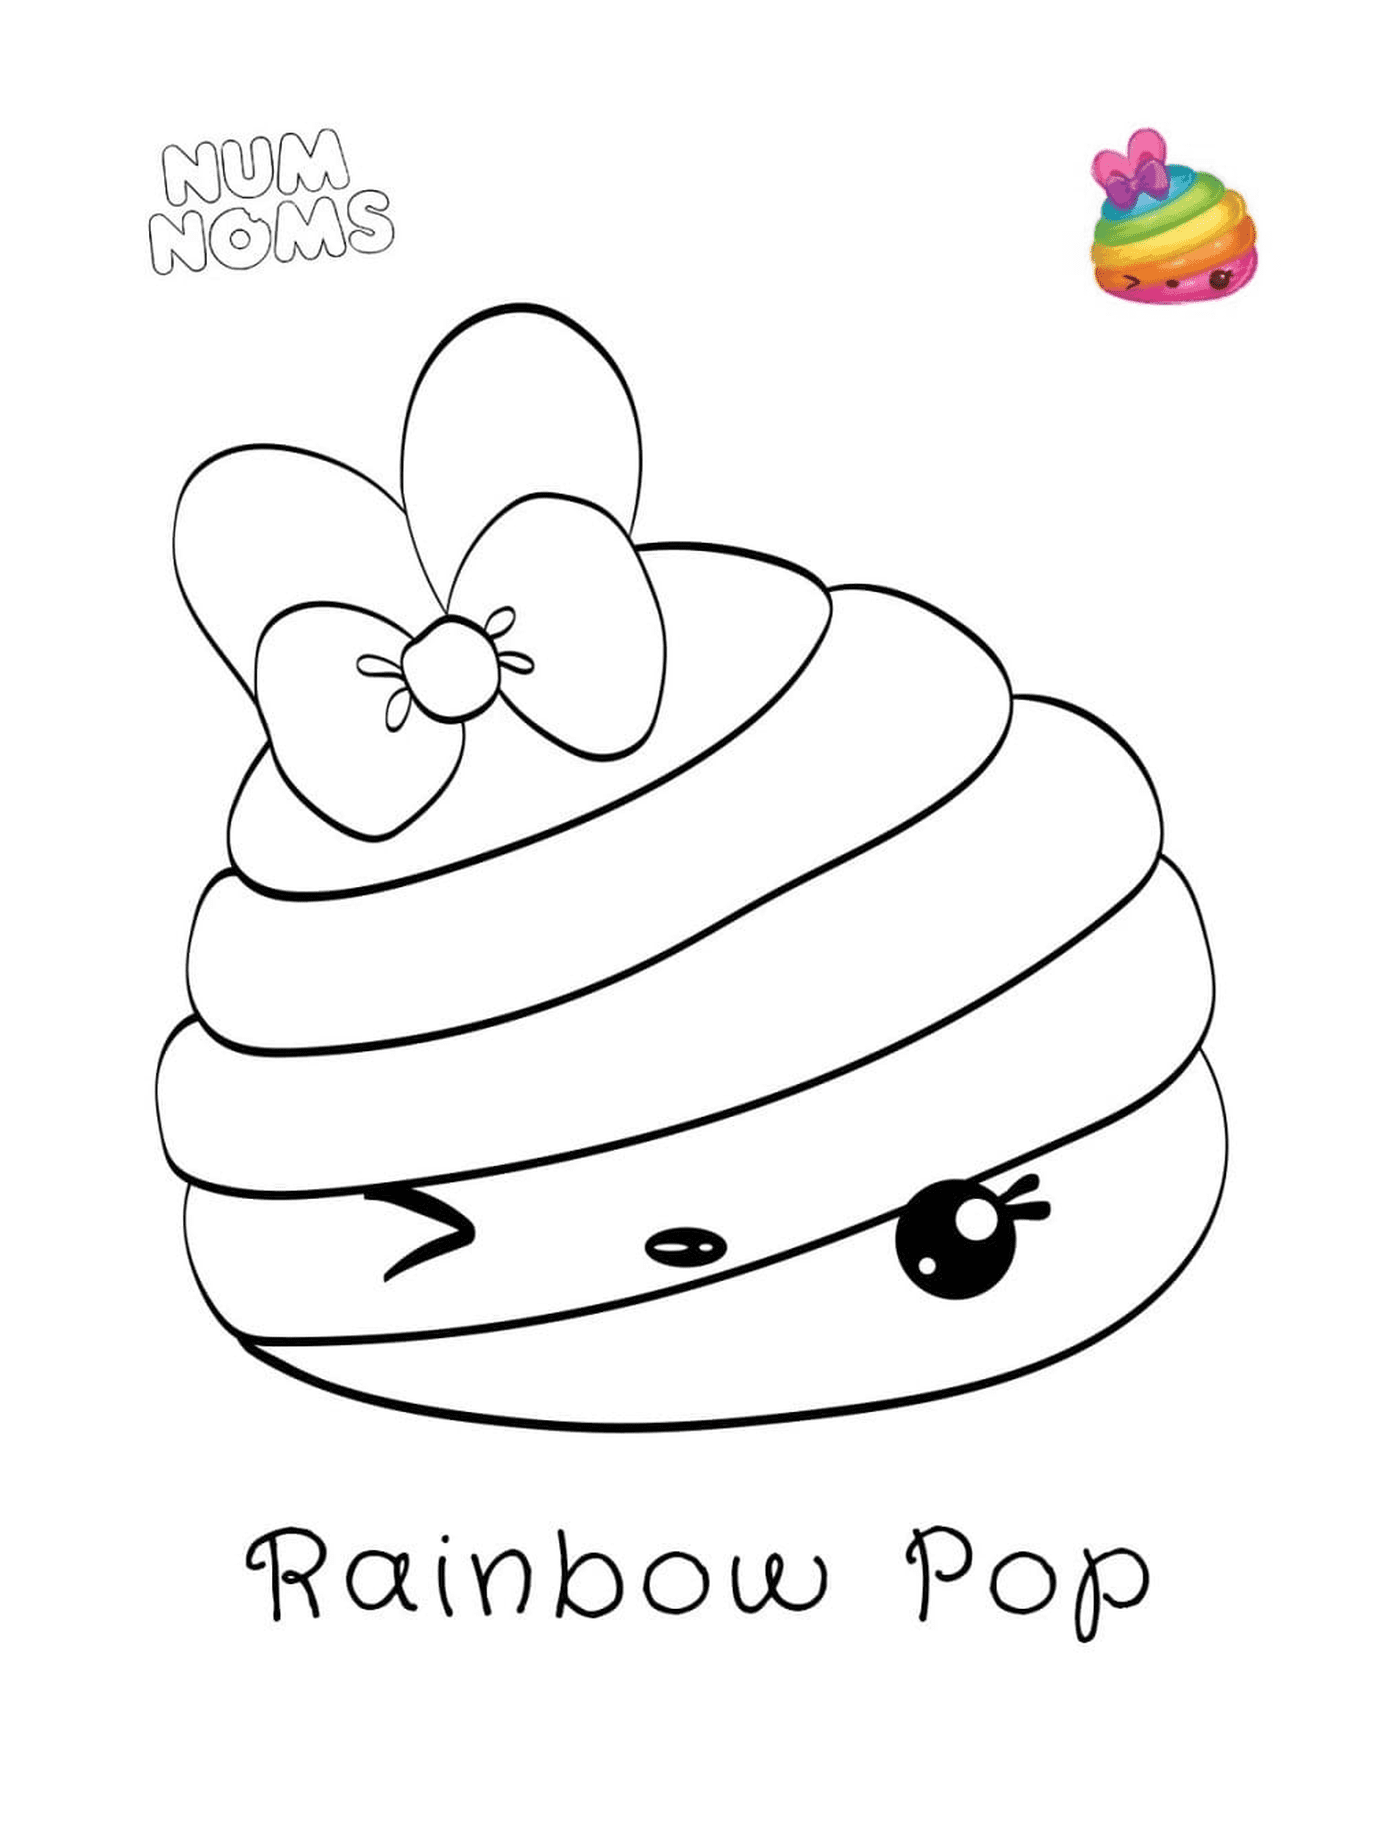  Cupcake con nudo arco iris 